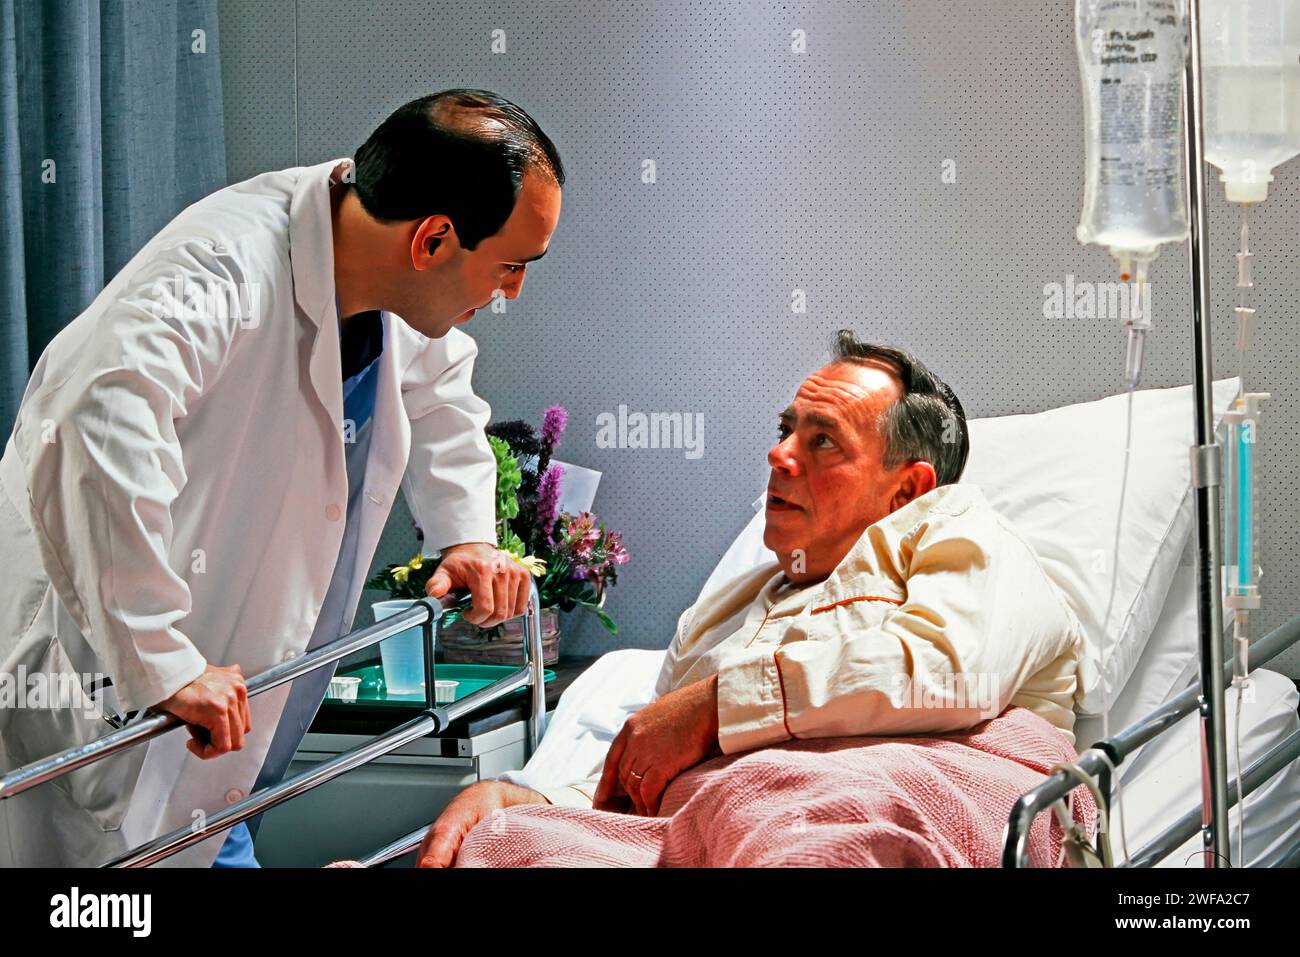 Un homme dans un lit d'hôpital a engagé une conversation avec un professionnel de la santé portant un manteau blanc. Banque D'Images